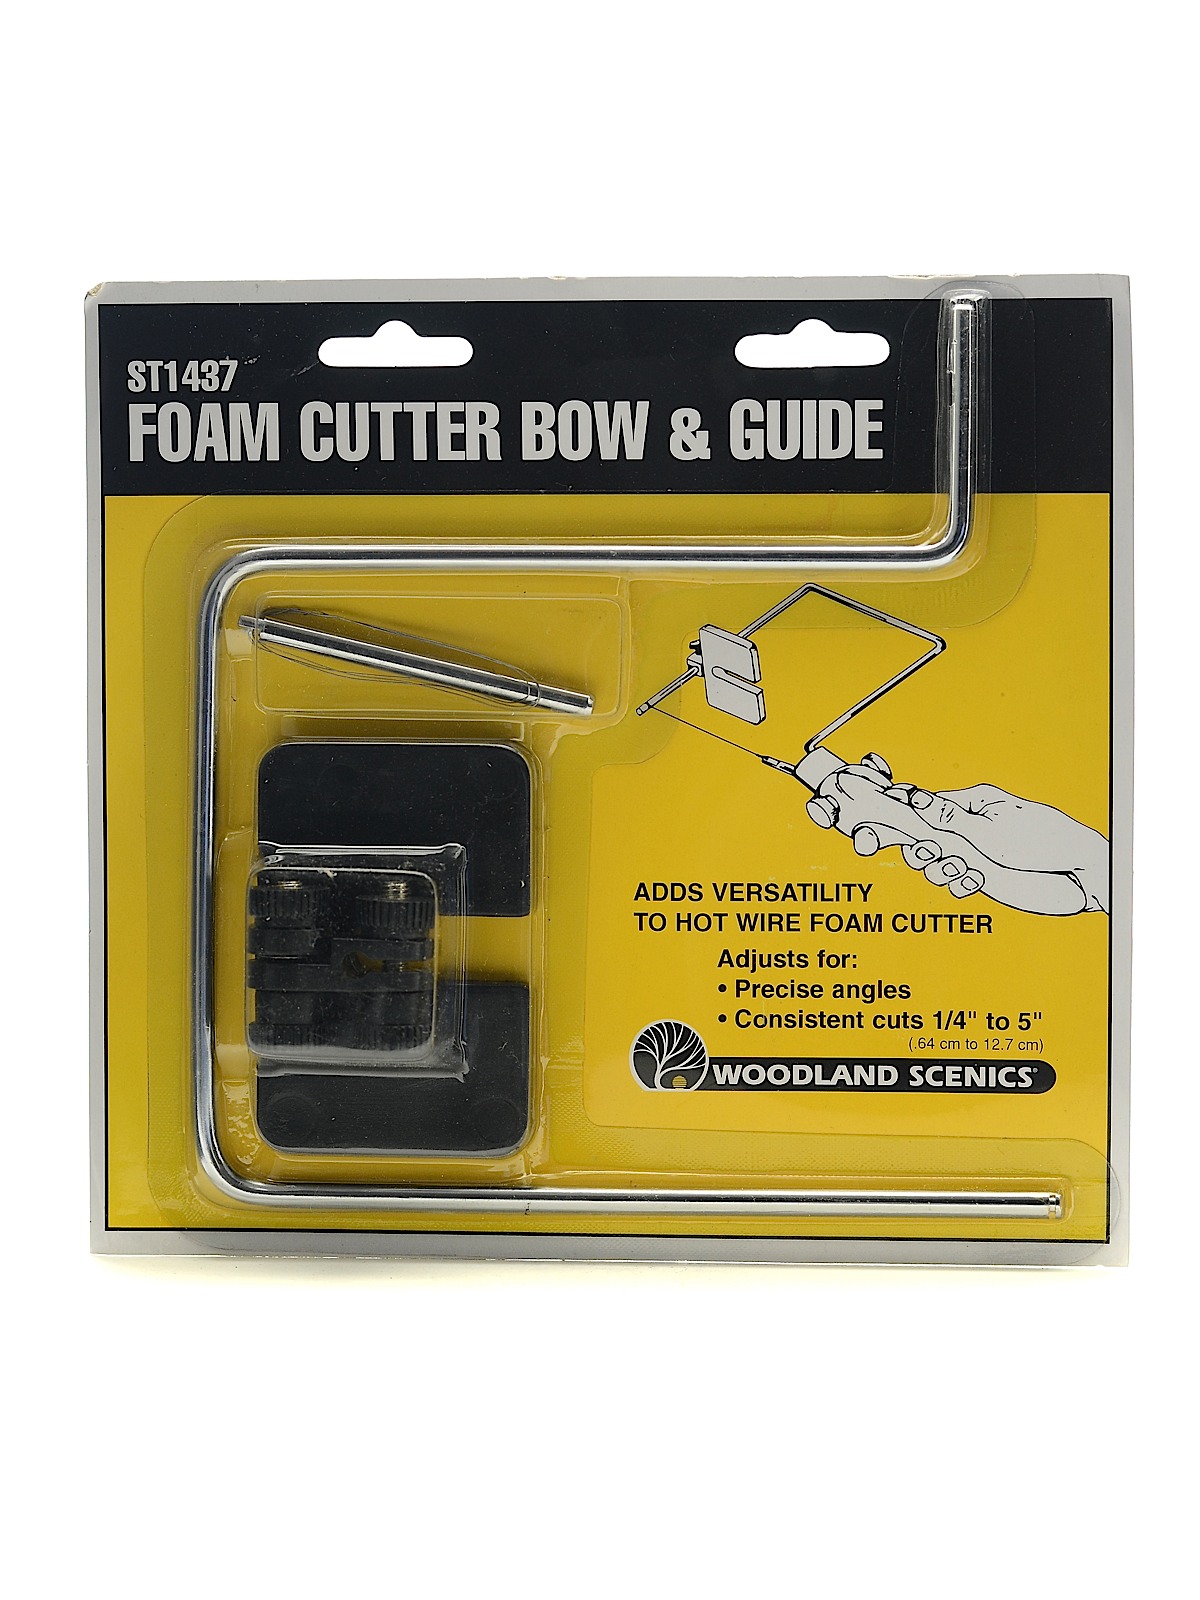 Hot Wire Foam Cutter And Accessories Foam Cutter Bow & Guide